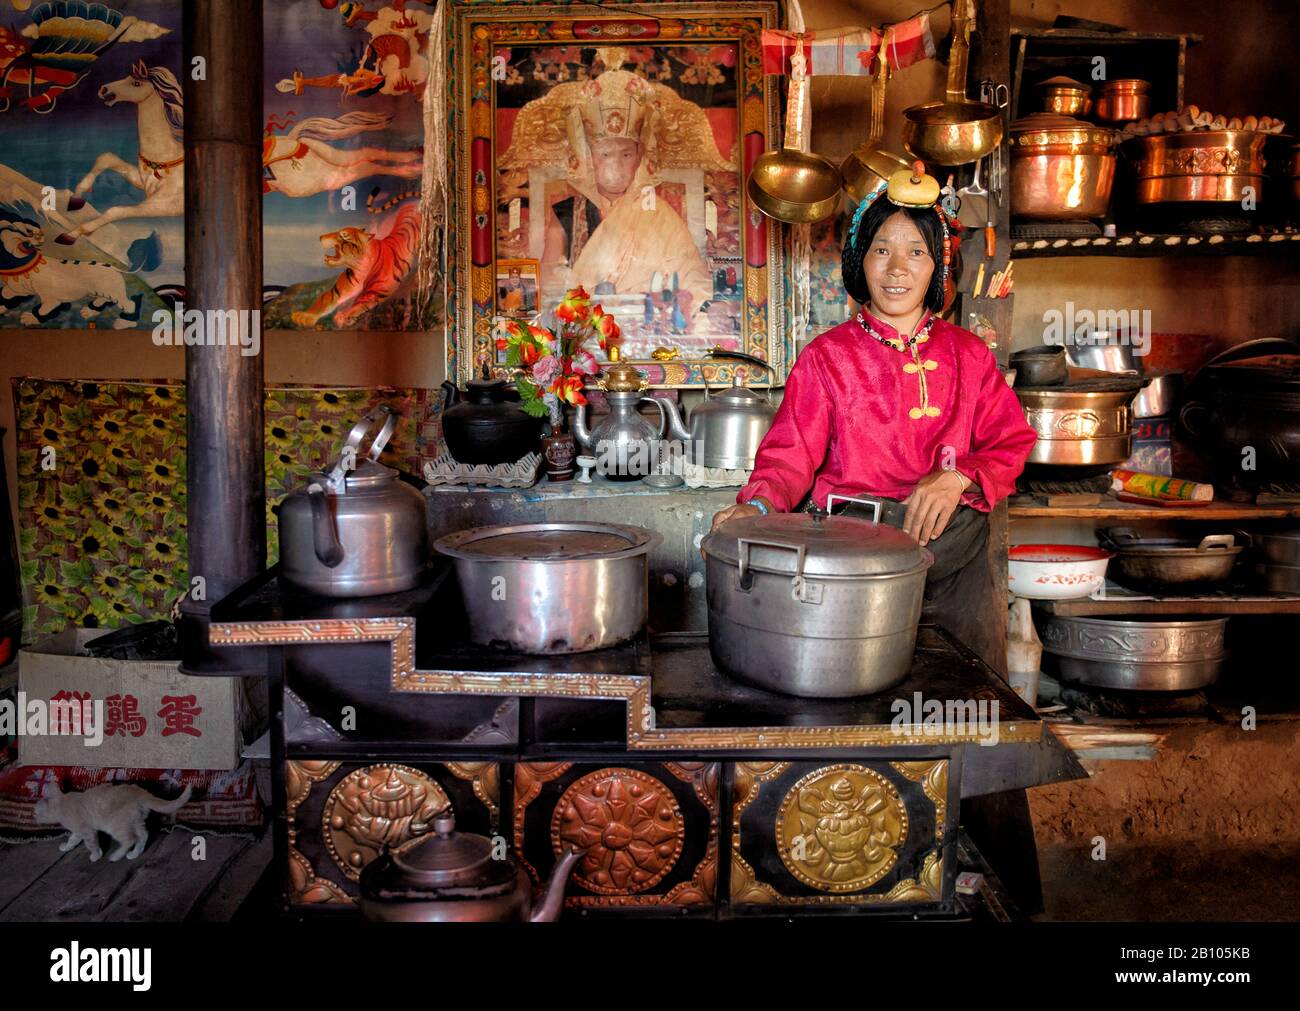 In der Küche und dem Herd verbringen die Tibeter den Großteil ihrer Zeit zu Hause. Es hält sie warm. Dort wird ihr Reichtum an der Menge und Qualität der Töpfe gemessen, die sie besitzen. Abgelegenes tibetisches Plateau Stockfoto